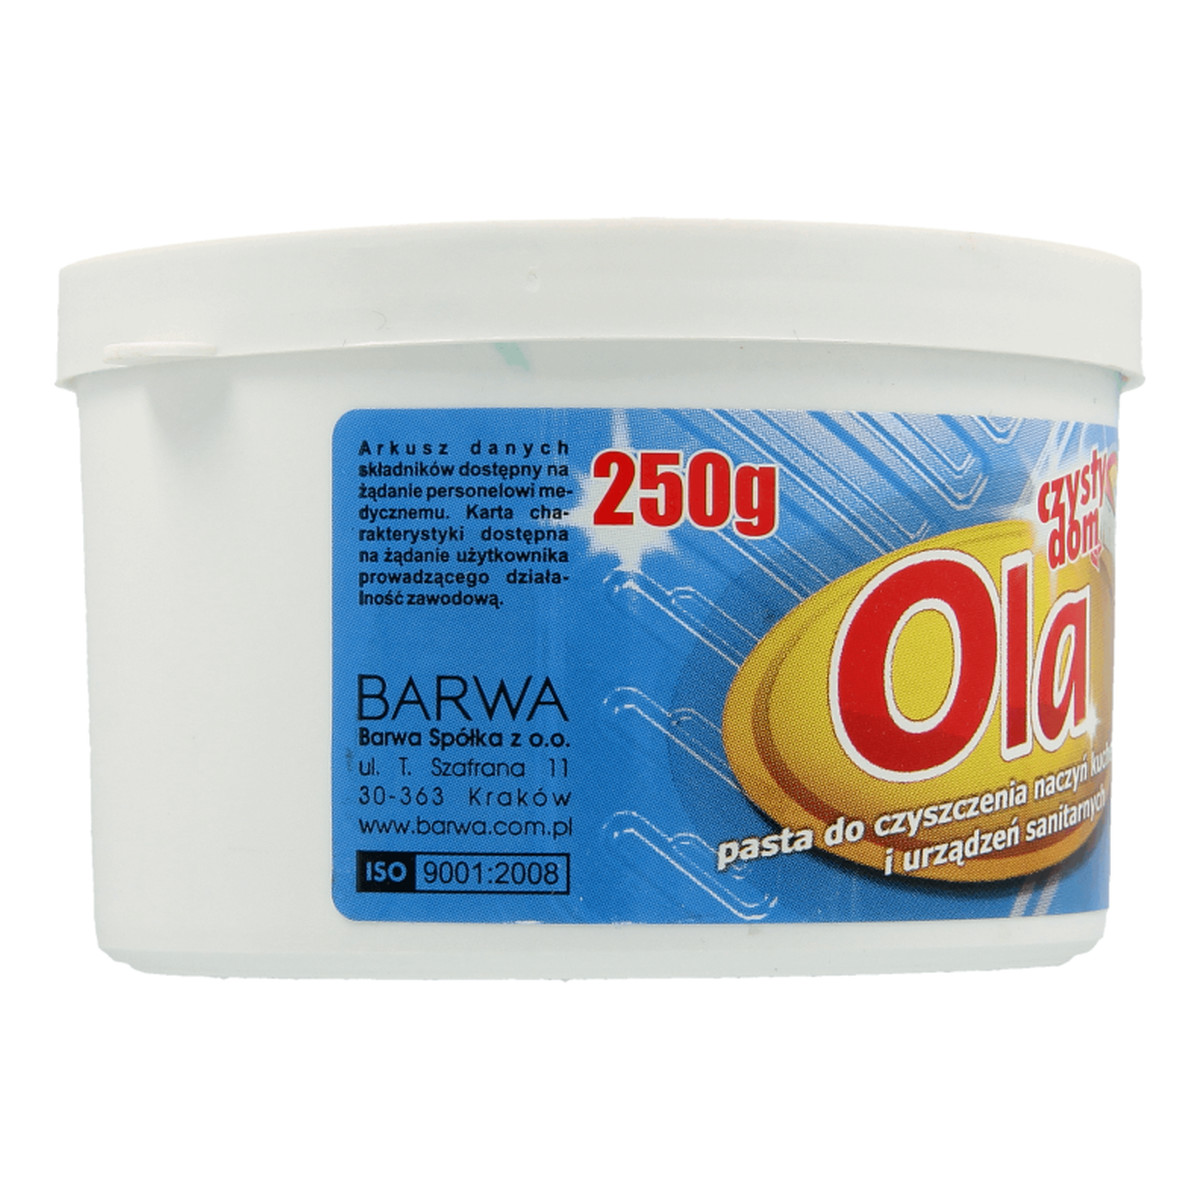 Barwa Ola Pasta do czyszczenia naczyń i urządzeń sanitarnych 250g